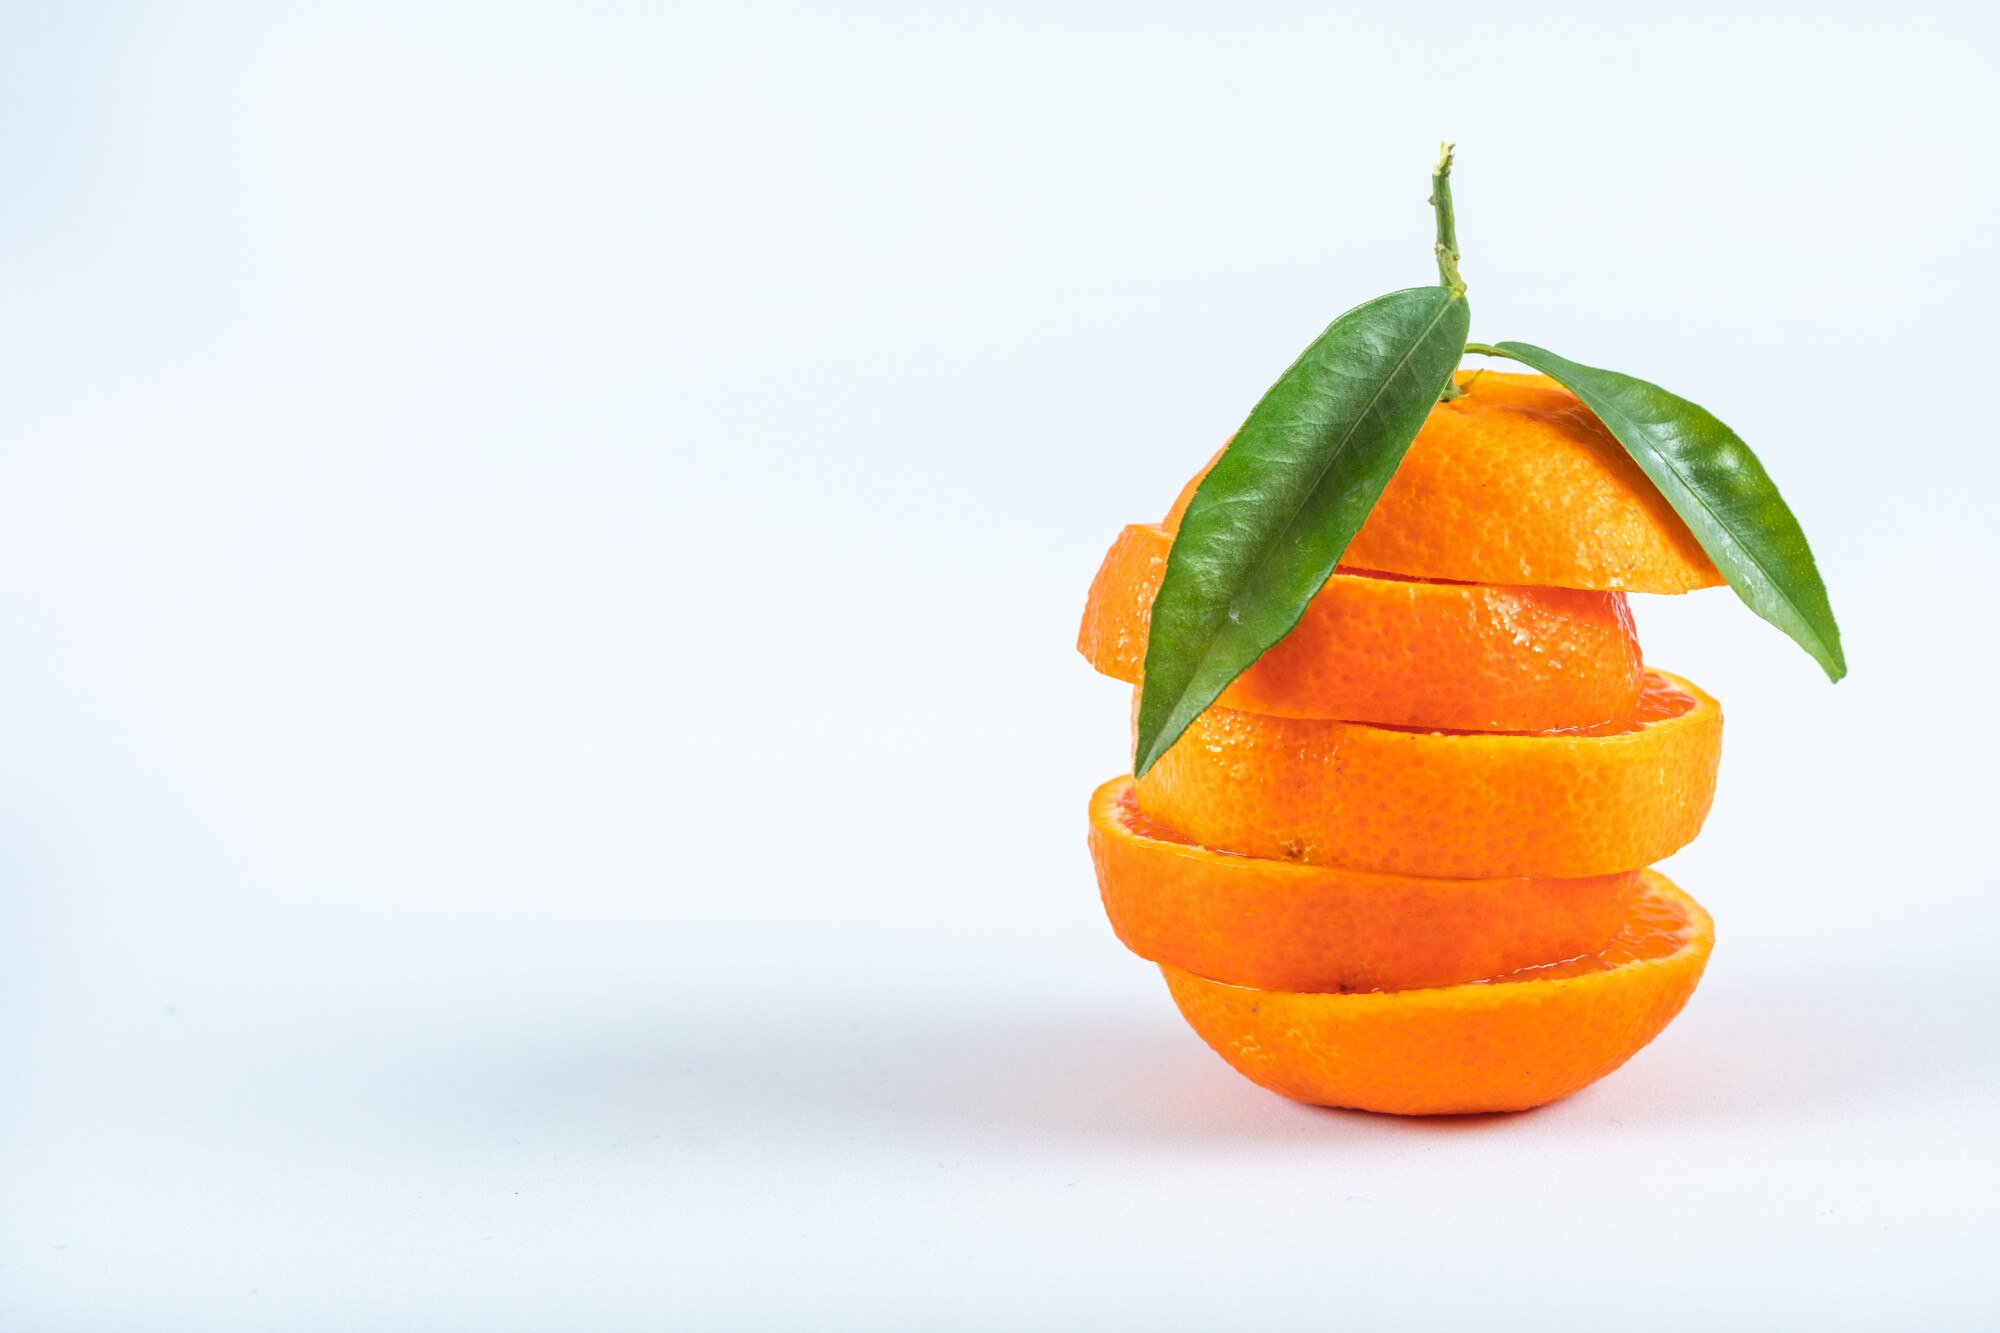 Експерти розповіли, навіщо використовувати апельсинову шкірку для розсади